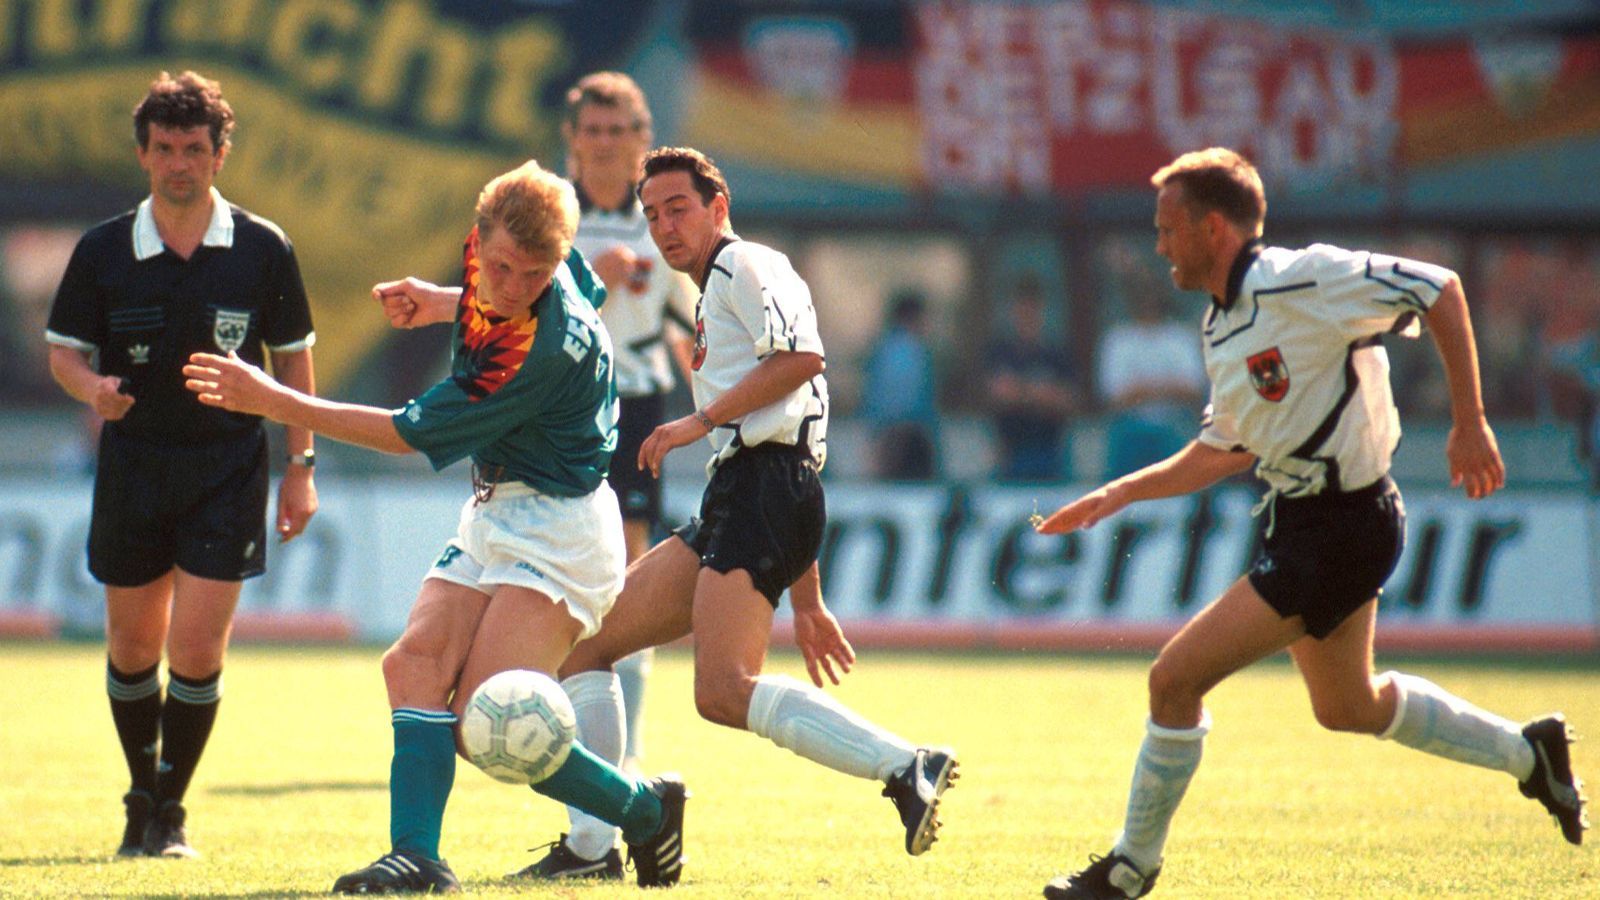 <strong>Deutschland revanchiert sich 1994</strong>
<br>Im Jahr 1992 hatte es noch ein 0:0 zwischen den Nachbarn in Nürnberg gegeben, zwei Jahre später traf man sich unmittelbar vor der WM in den USA im Ernst-Happel-Stadion wieder. Deutschland siegte mit 5:1 und revanchierte sich für die Niederlage 1986. Matthias Sammer, Jürgen Klinsmann, zweimal Andreas Möller und Mario Basler erzielten die Tore.
